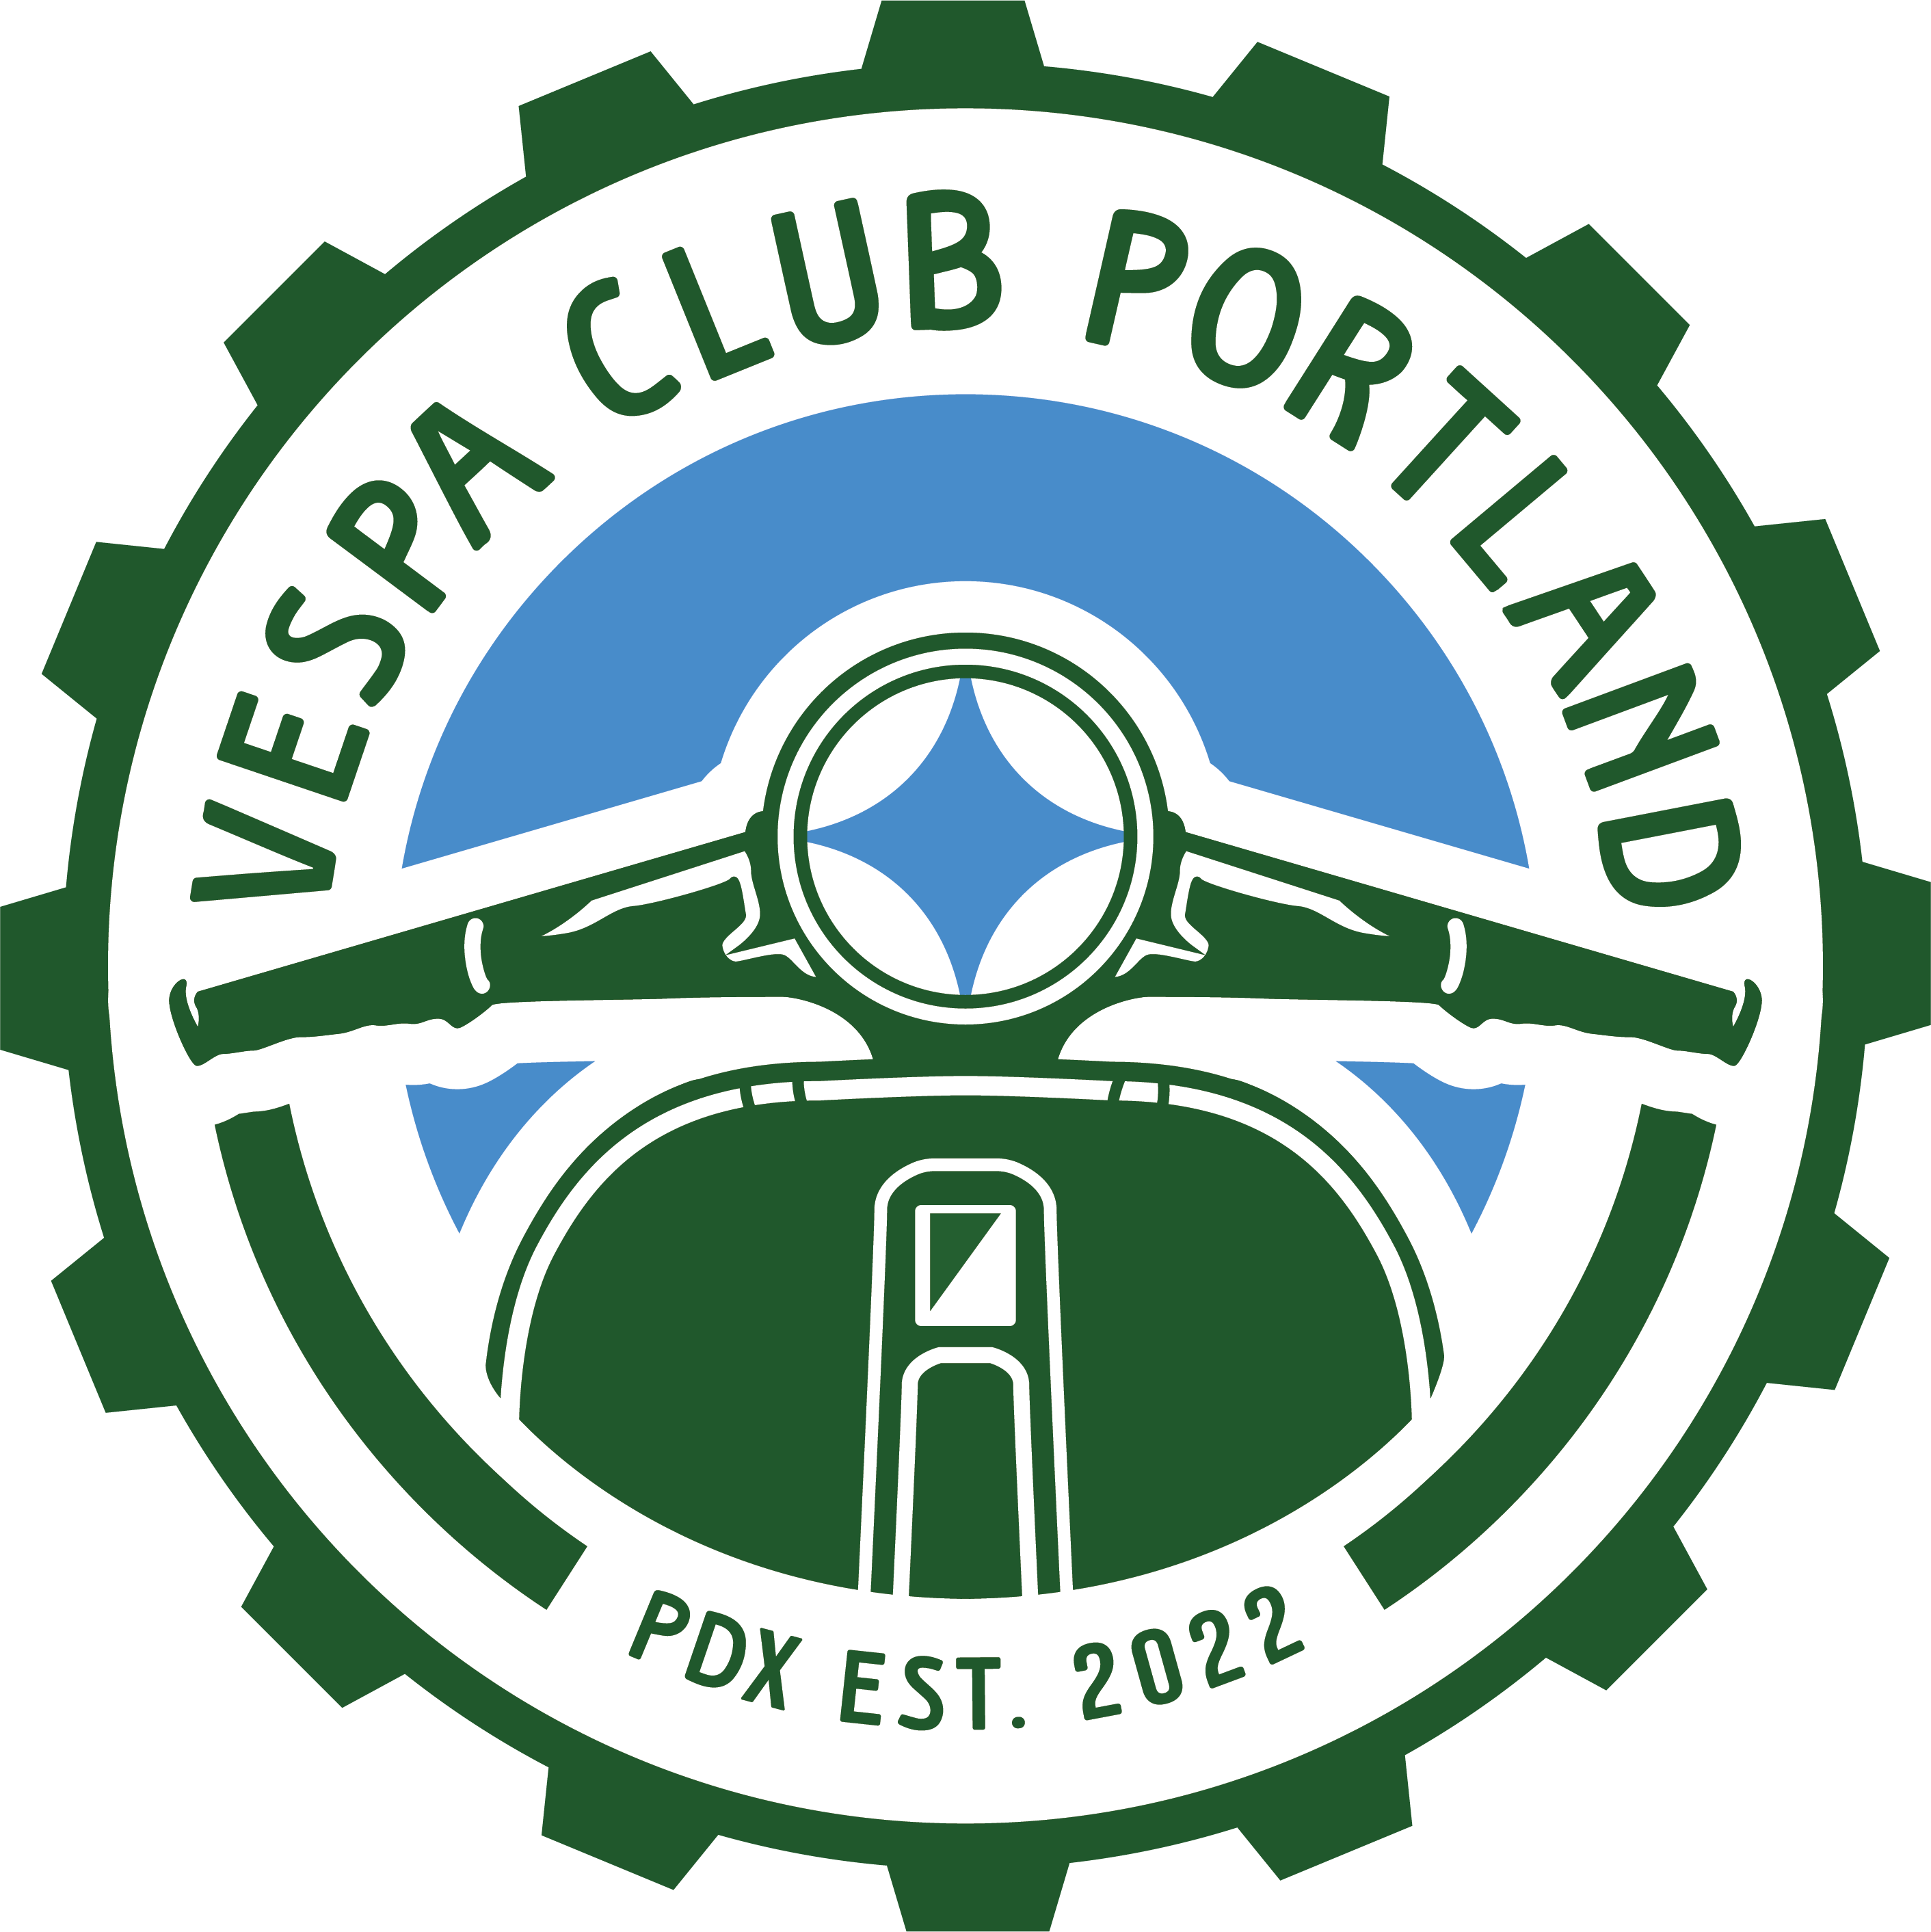 vespa club logo